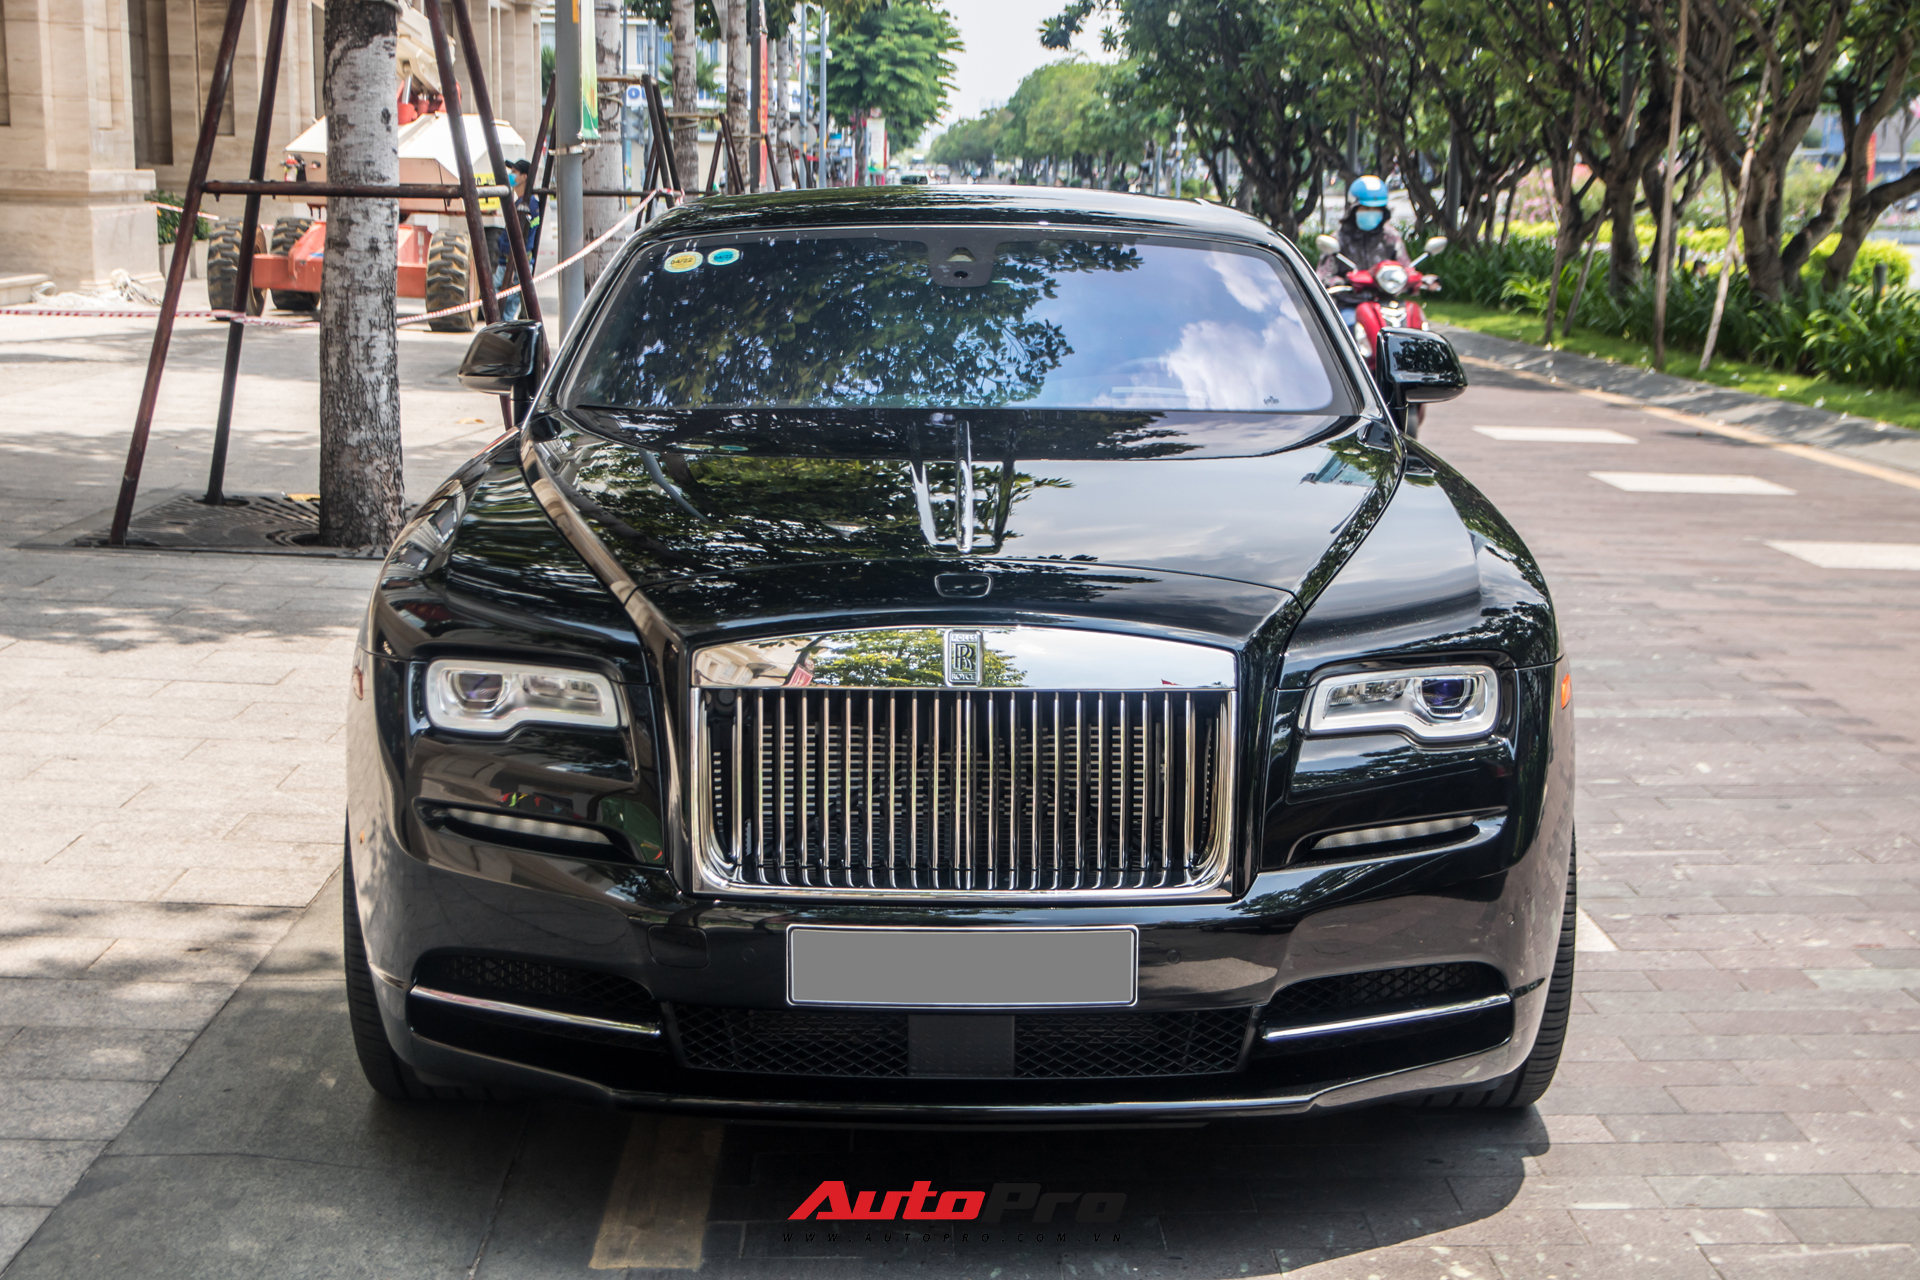 Vợ chồng doanh nhân Nguyễn Quốc Cường chạy Rolls-Royce Wraith đi tậu đồng hồ mới, mâm xe là điểm nhấn đáng chú ý - Ảnh 1.